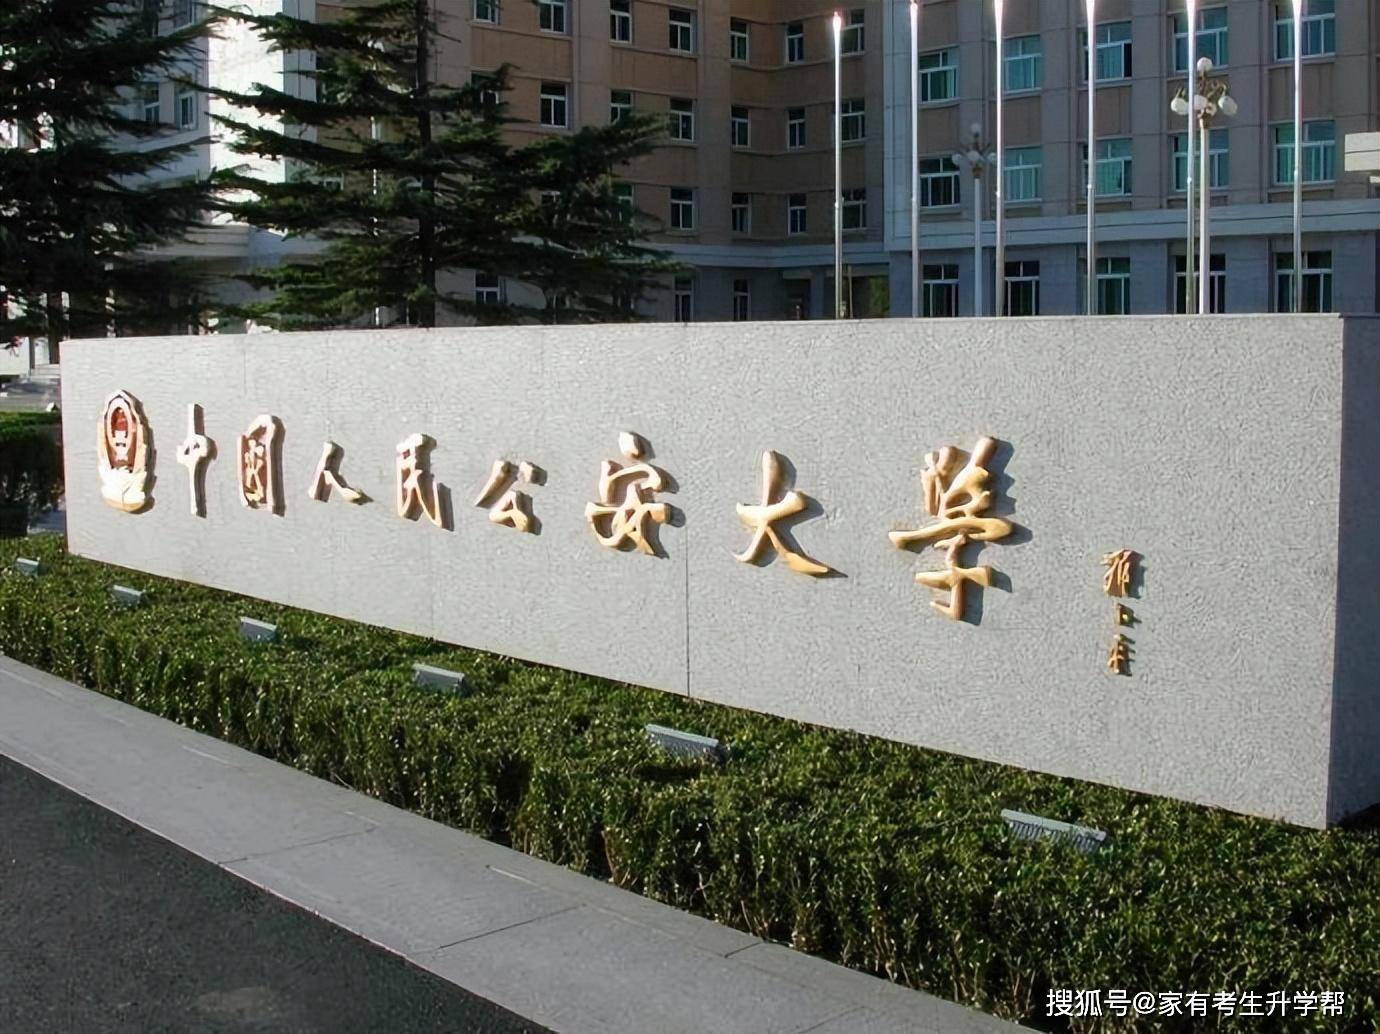 北京警察学院是几本图片